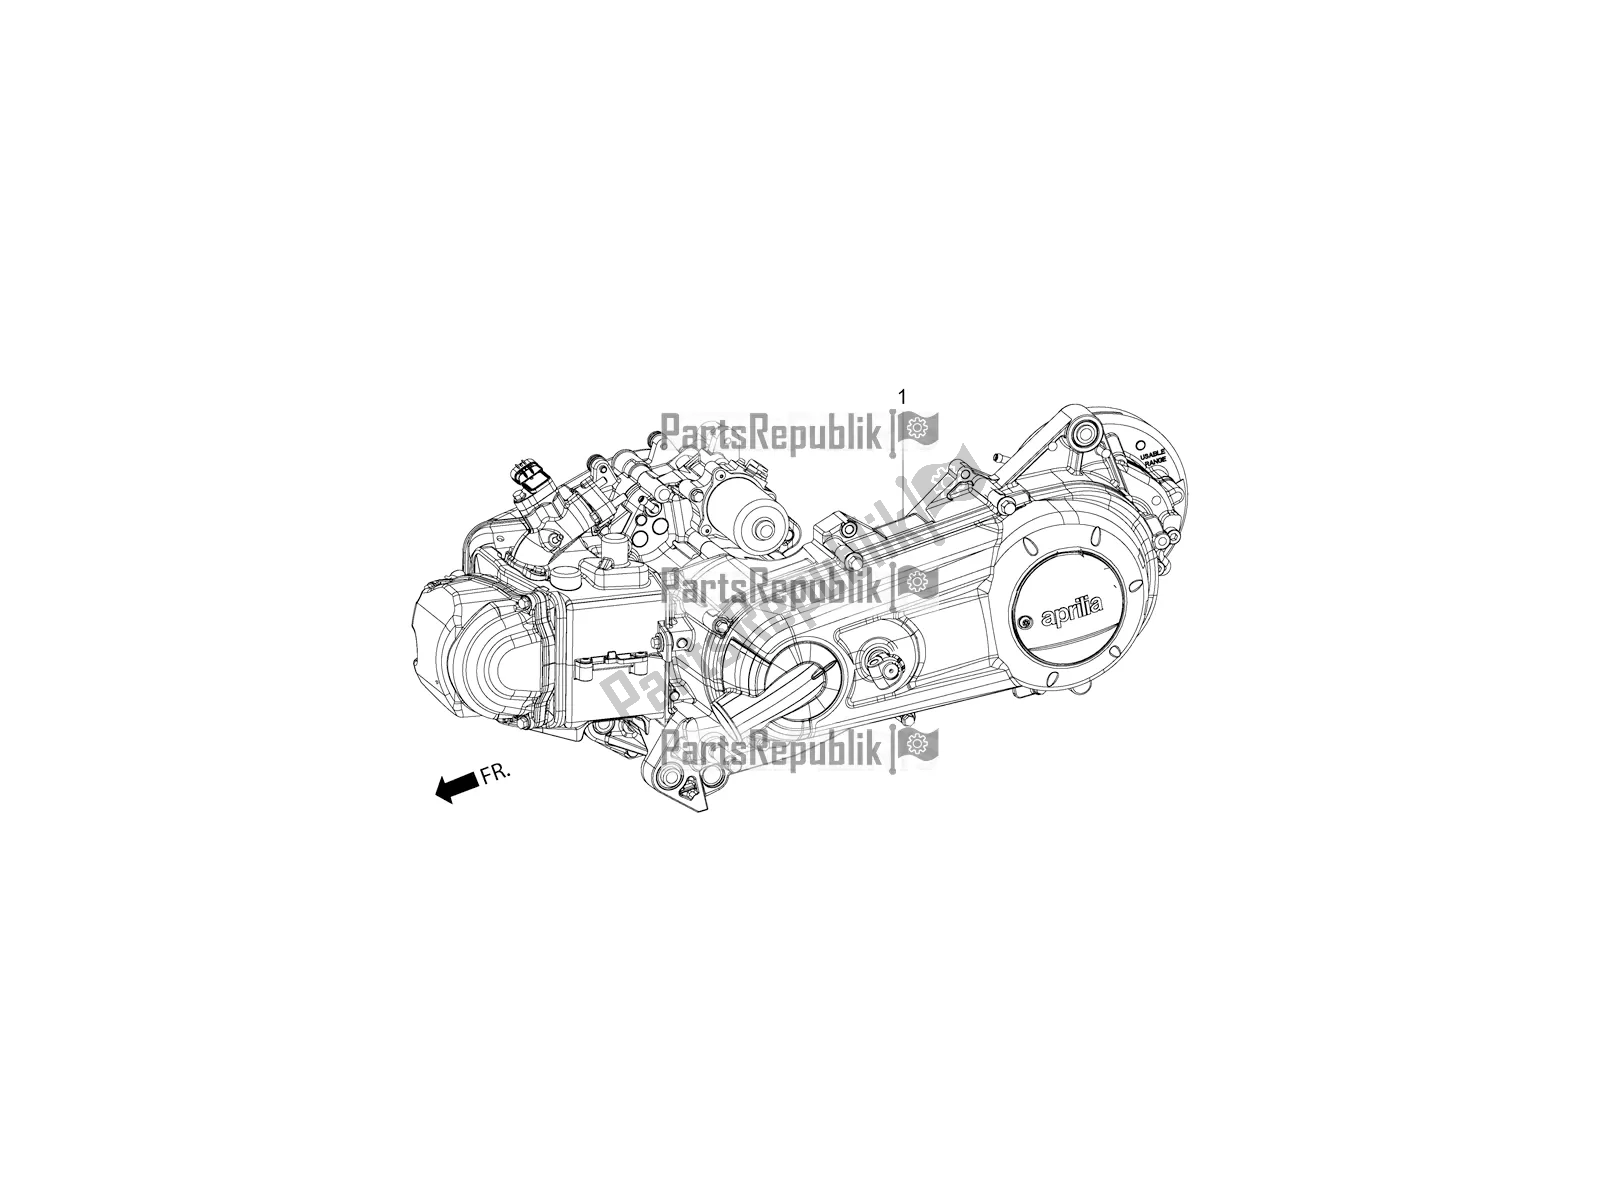 Alle onderdelen voor de Complete Engine van de Aprilia SR Motard 150 HE Carb. Race 2019